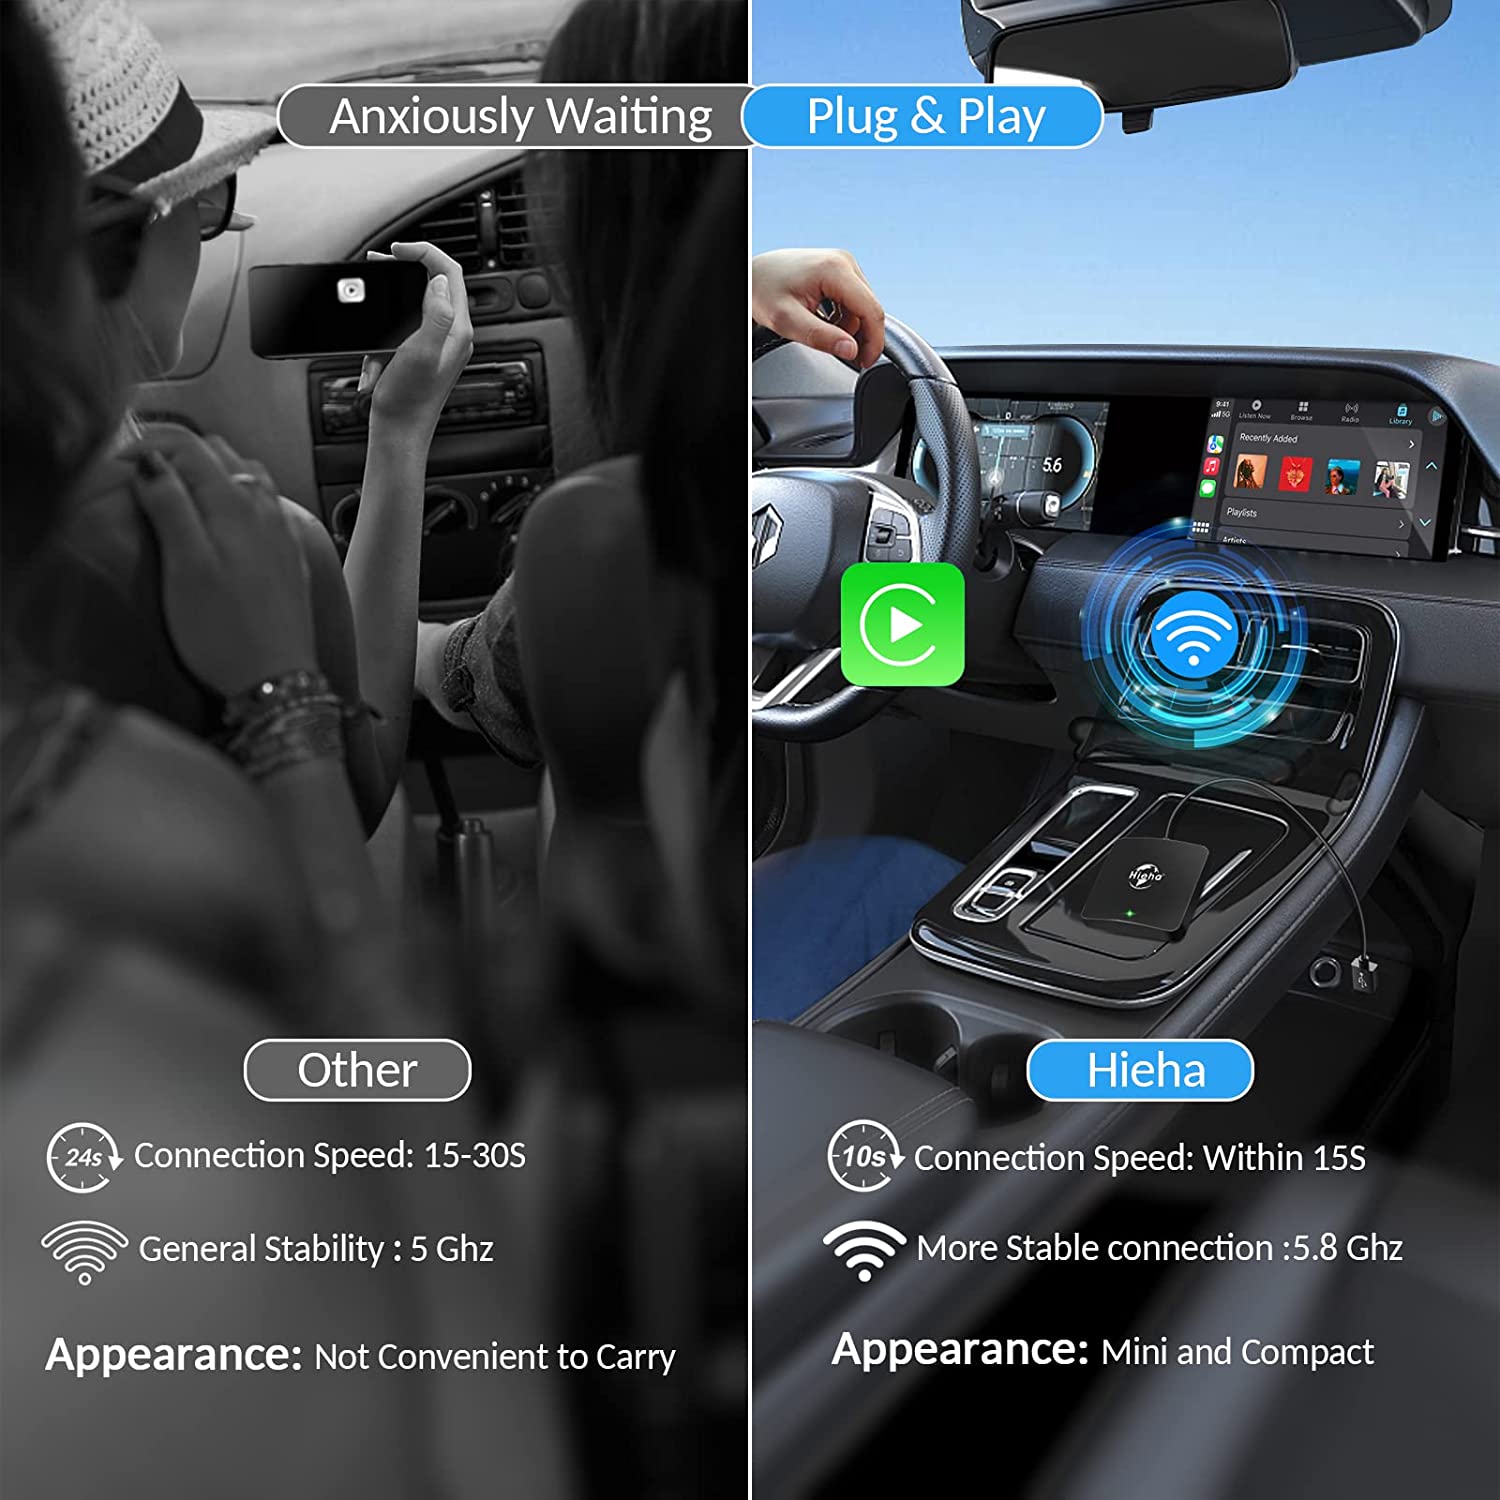 CarPlay Wireless Adapter, 2023 Newest Wireless CarPlay Adapter for iPhone,  CarPlay Wireless Dongle for All OEM Wired CarPlay Cars, 5.8GHz WiFi Plug 